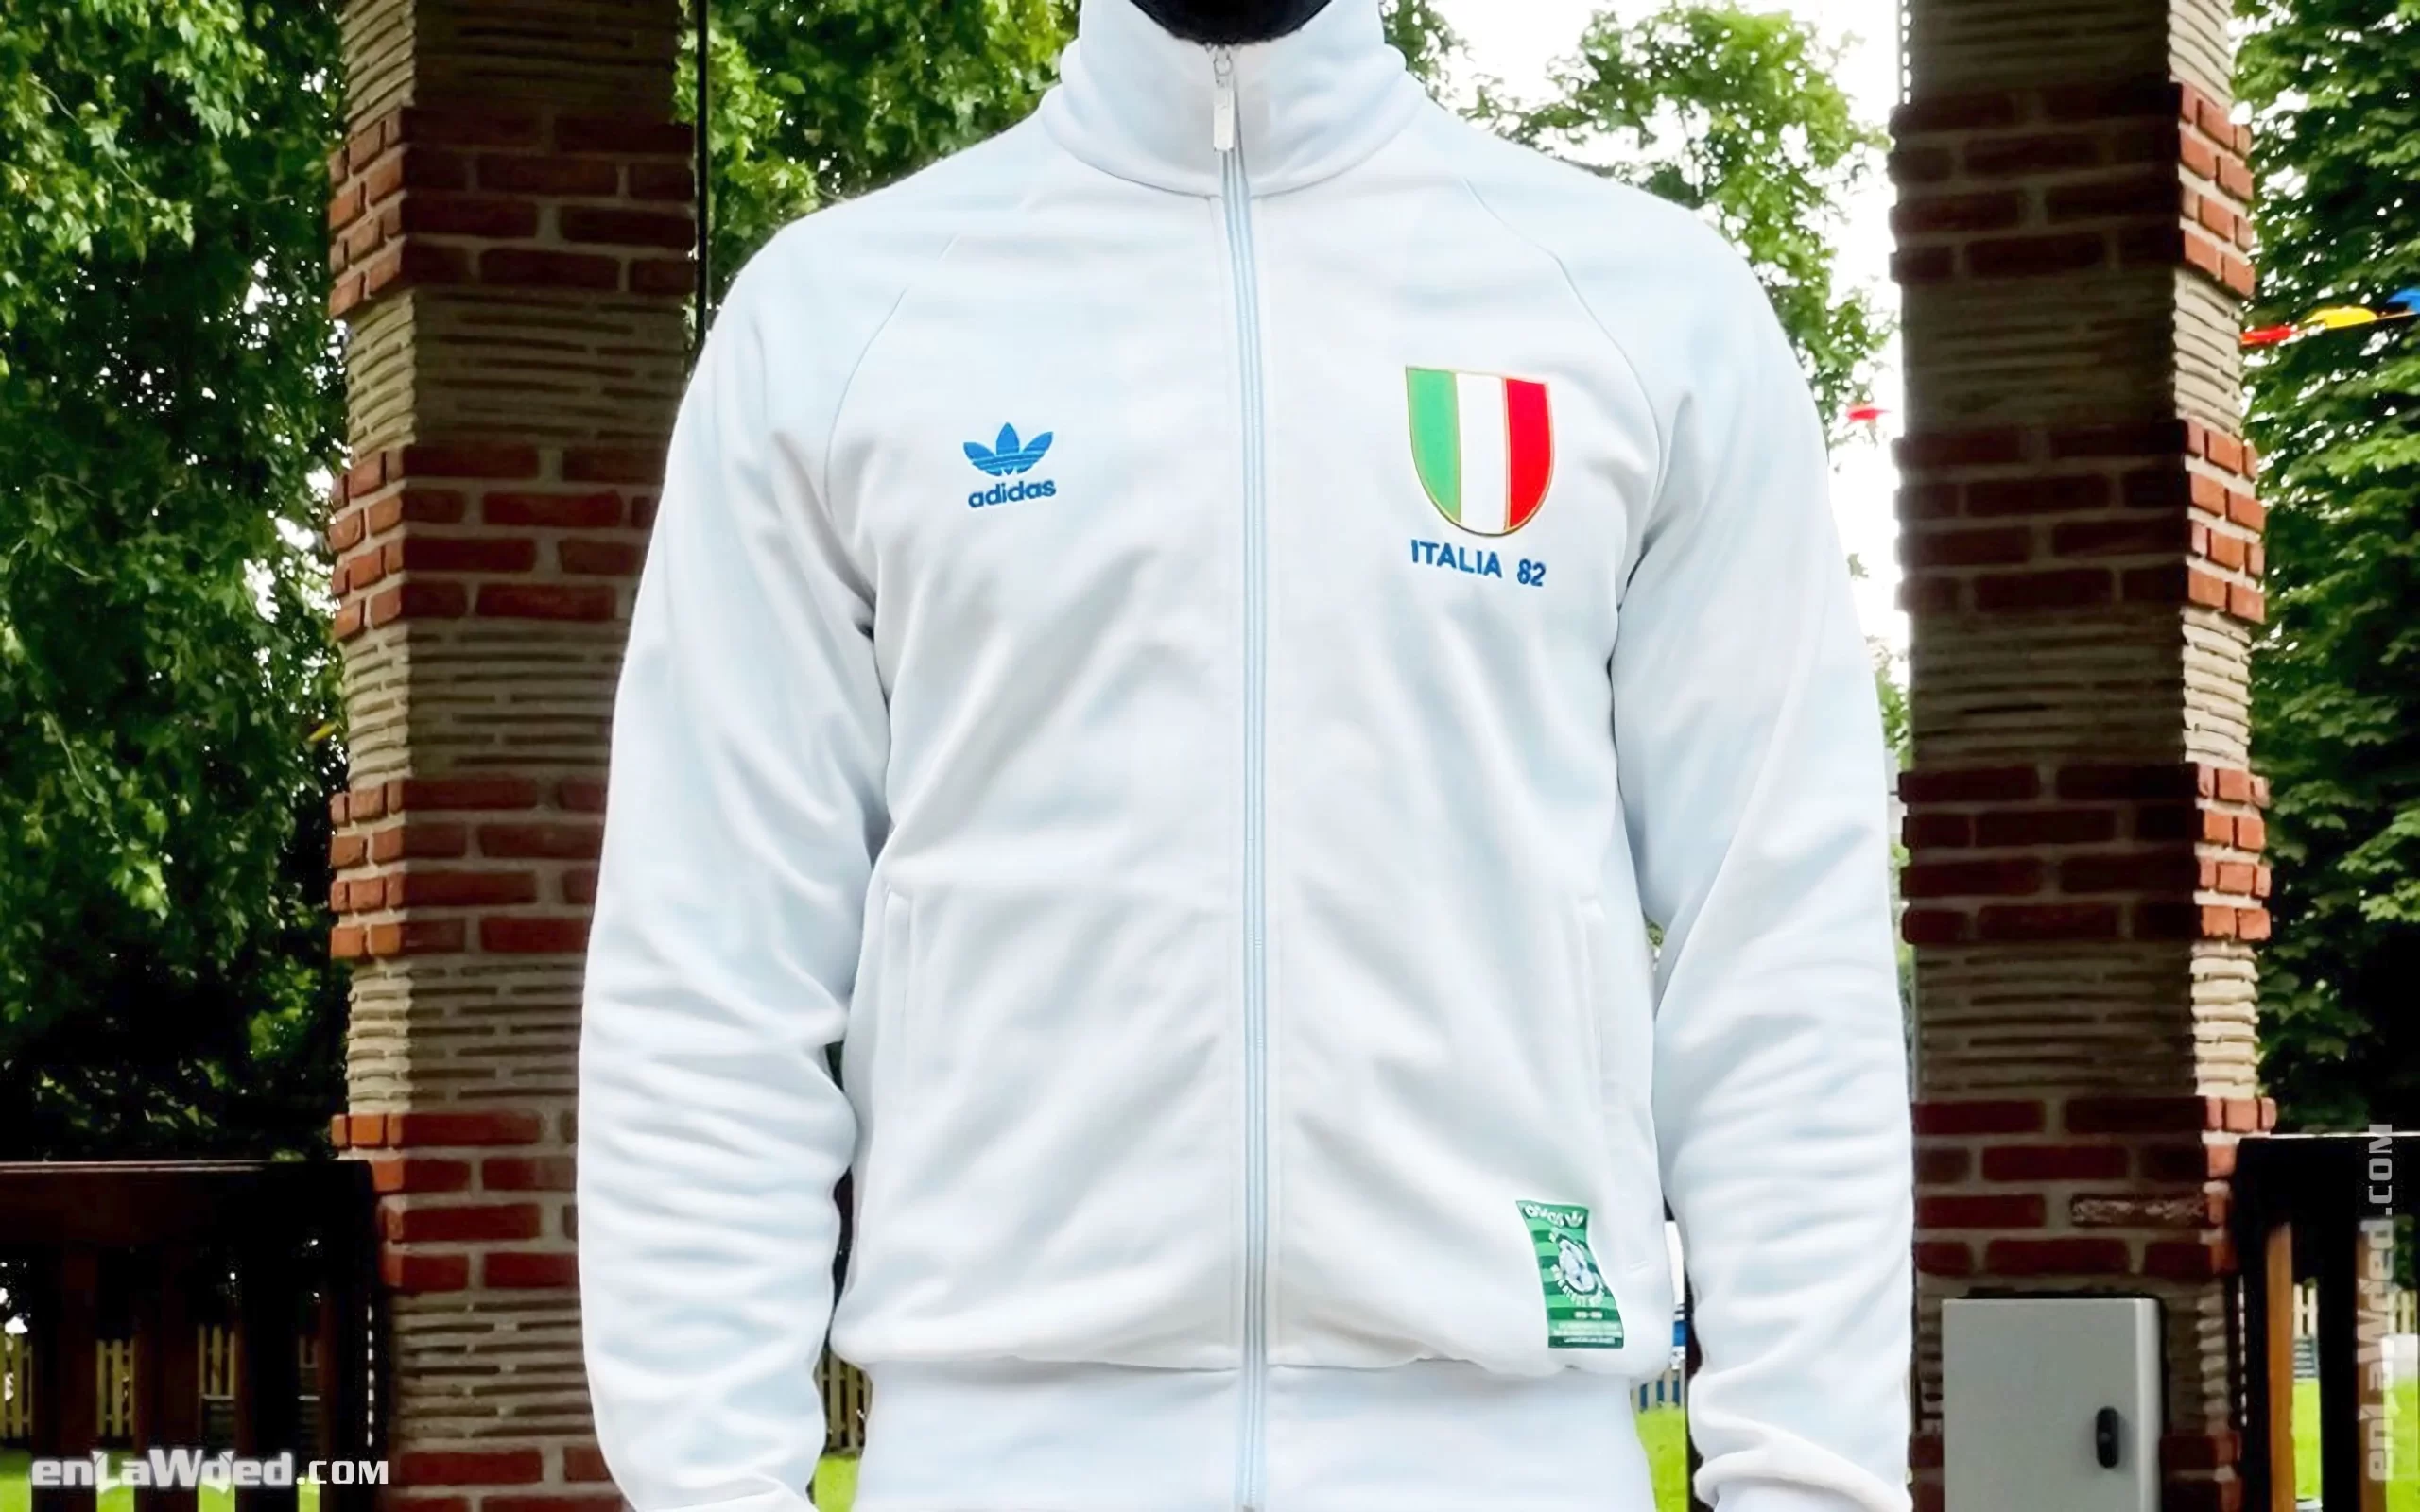 Men’s 2006 Italia ’82 Forza Azzurri TT by Adidas Originals: Complete (EnLawded.com file #lmc44cveun2z0cw3v5)